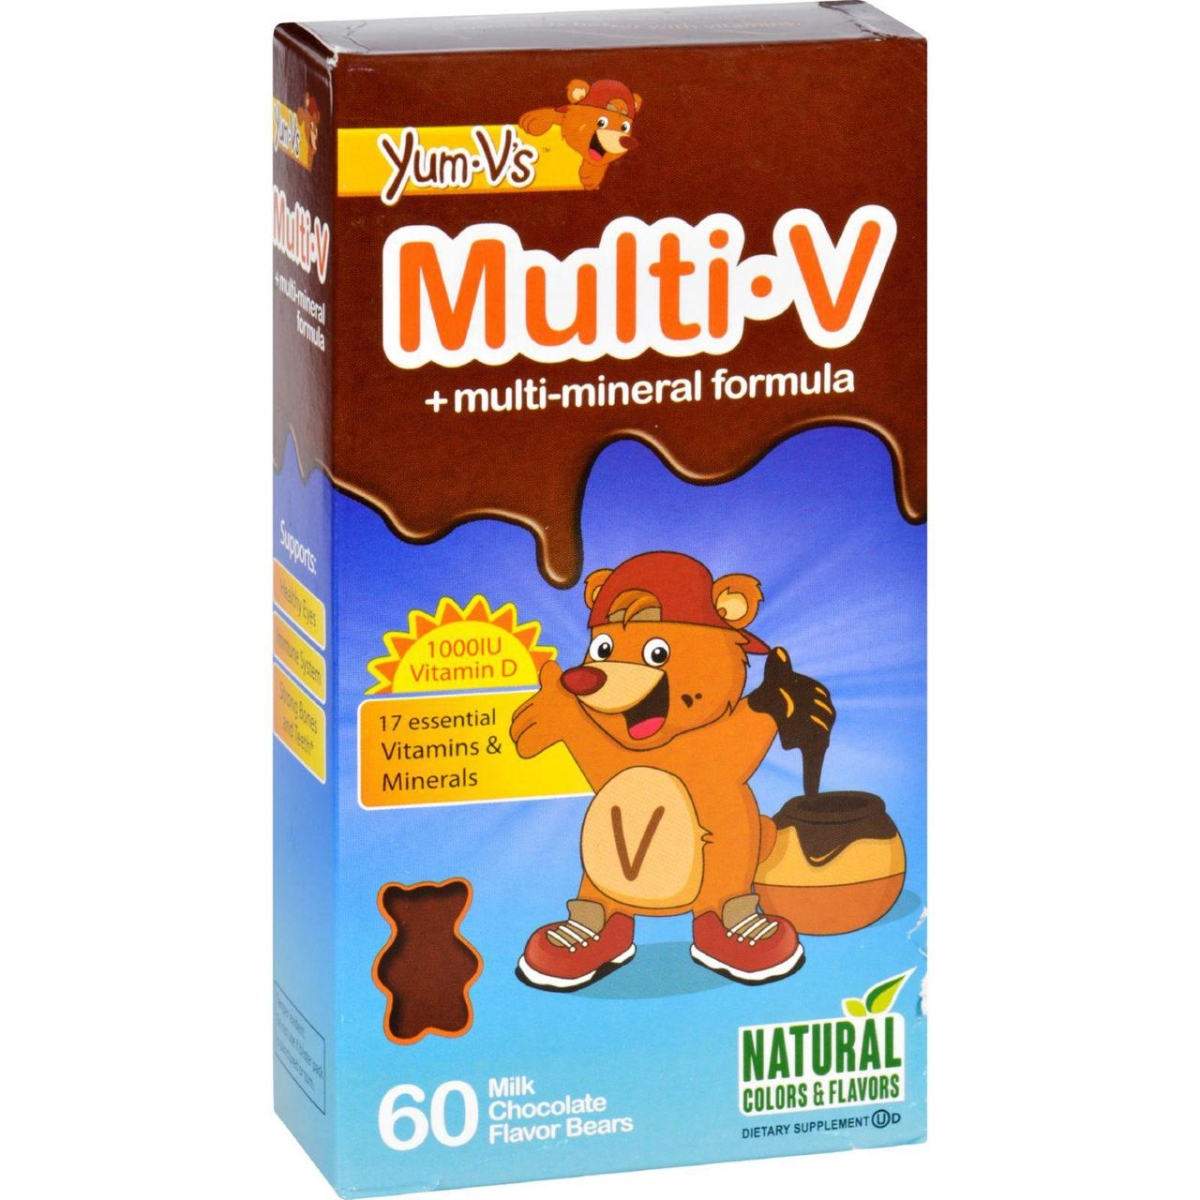 Hg1137835 Multi-v Plus Multi-mineral Formula Milk Chocolate - 60 Bears